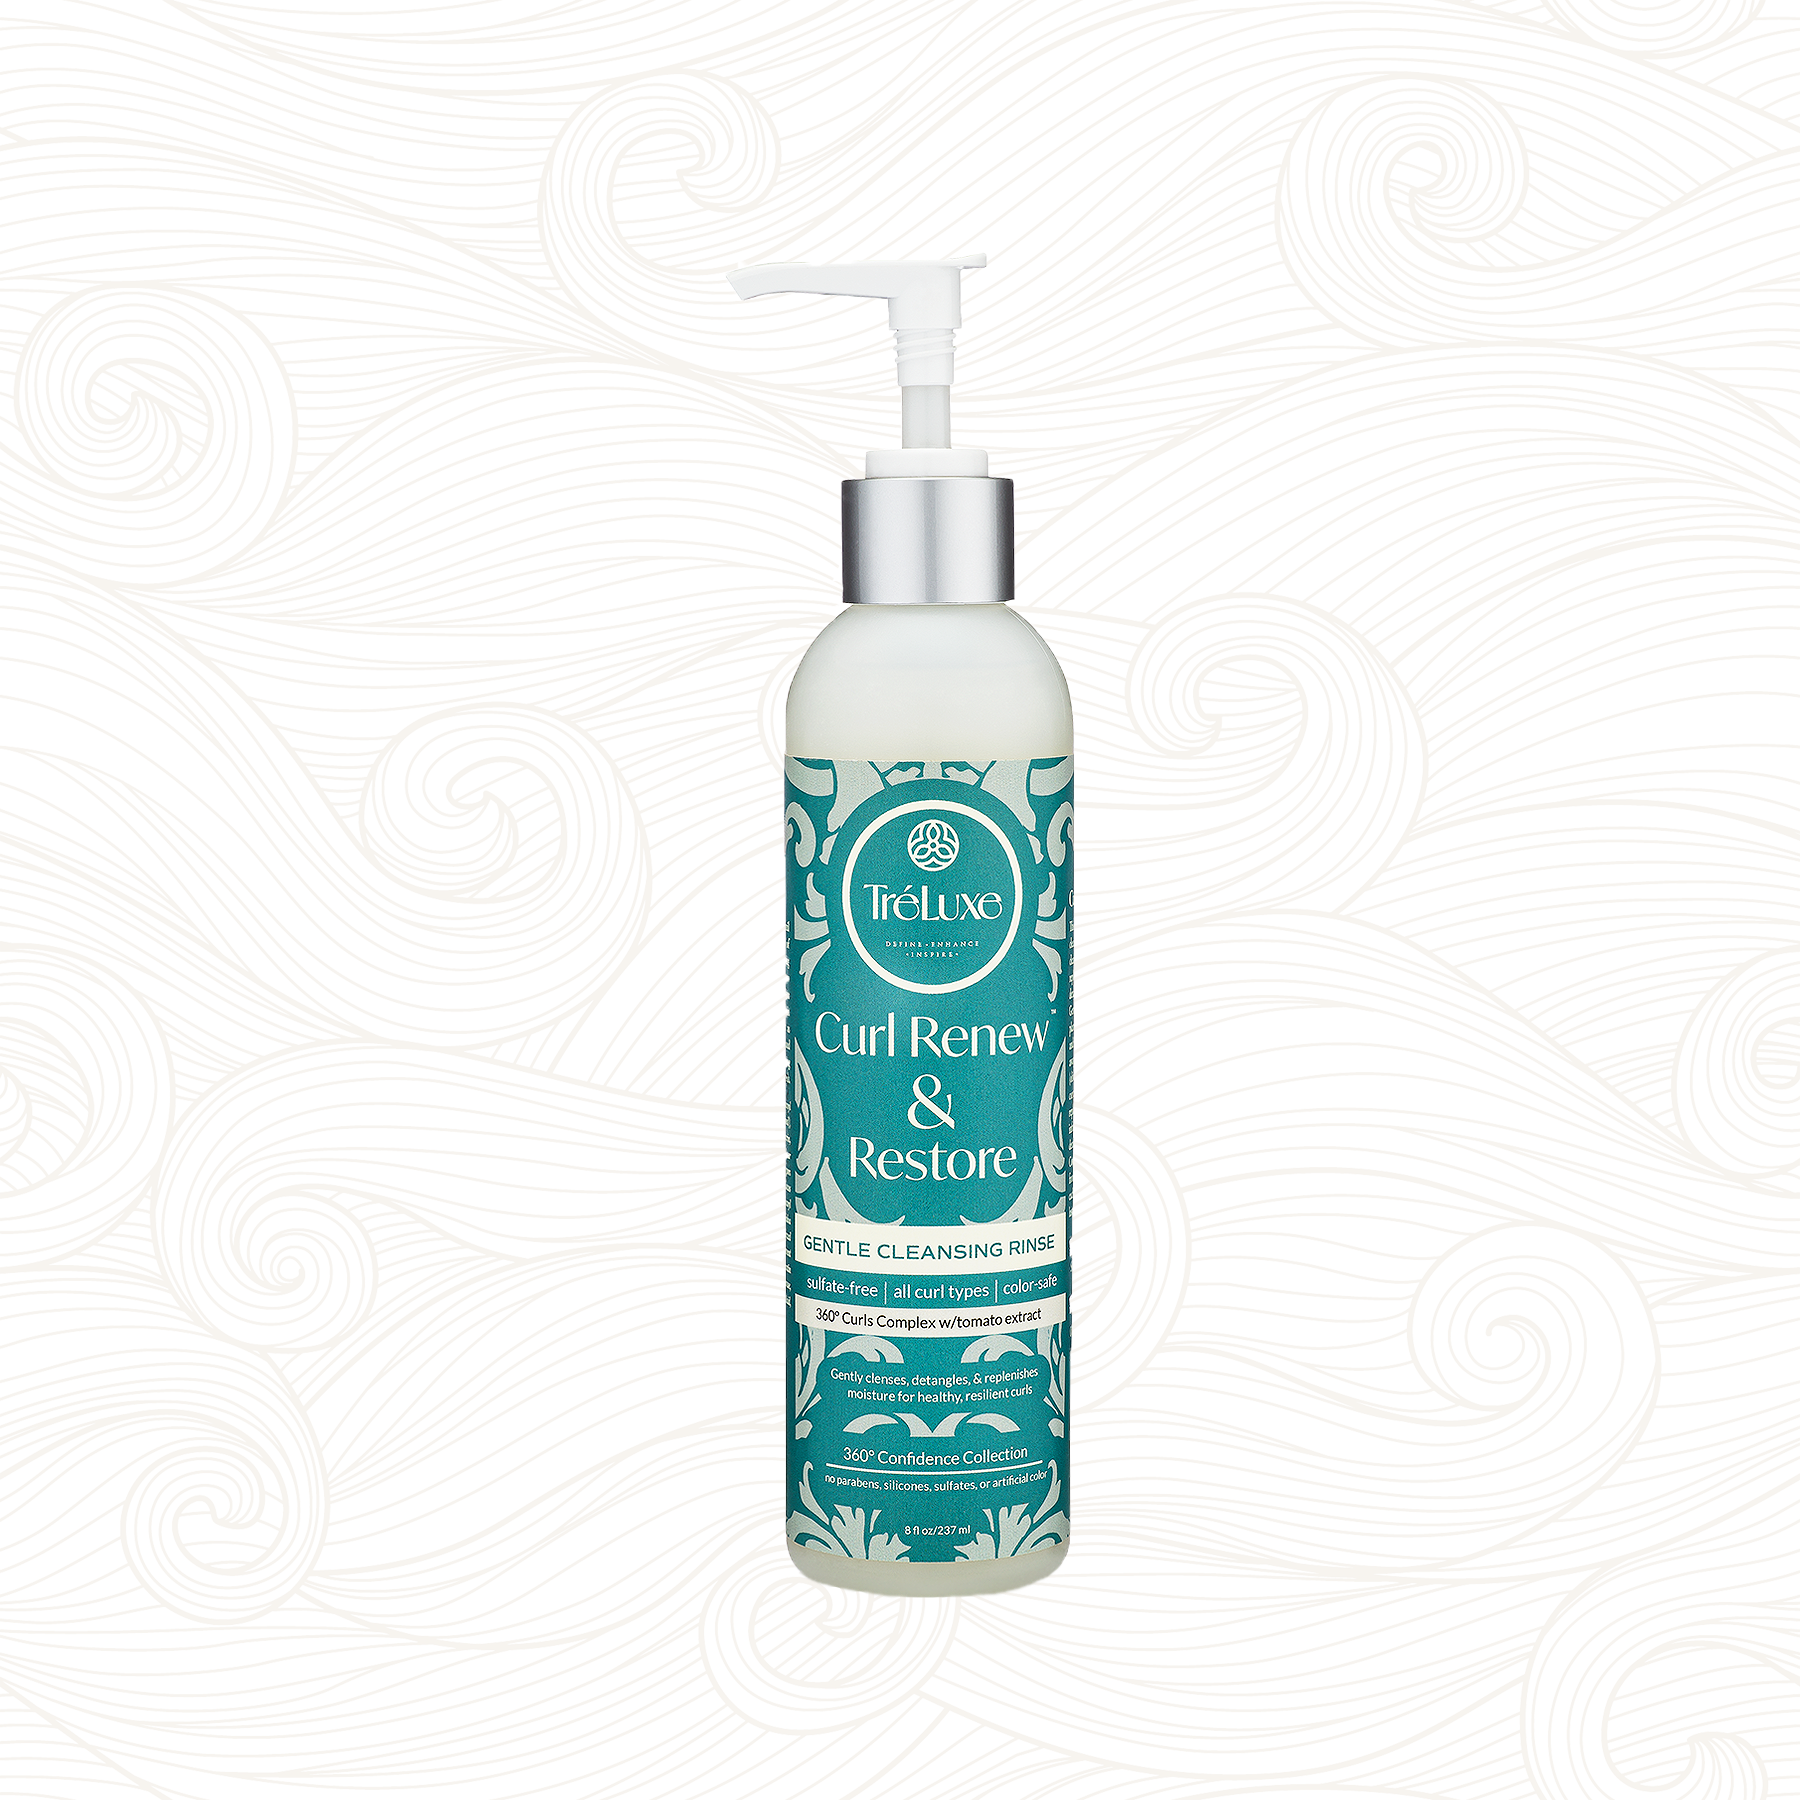 Tréluxe | Curl Renew & Restore Gentle Cleansing Rinse /236ml Shampoo Tréluxe